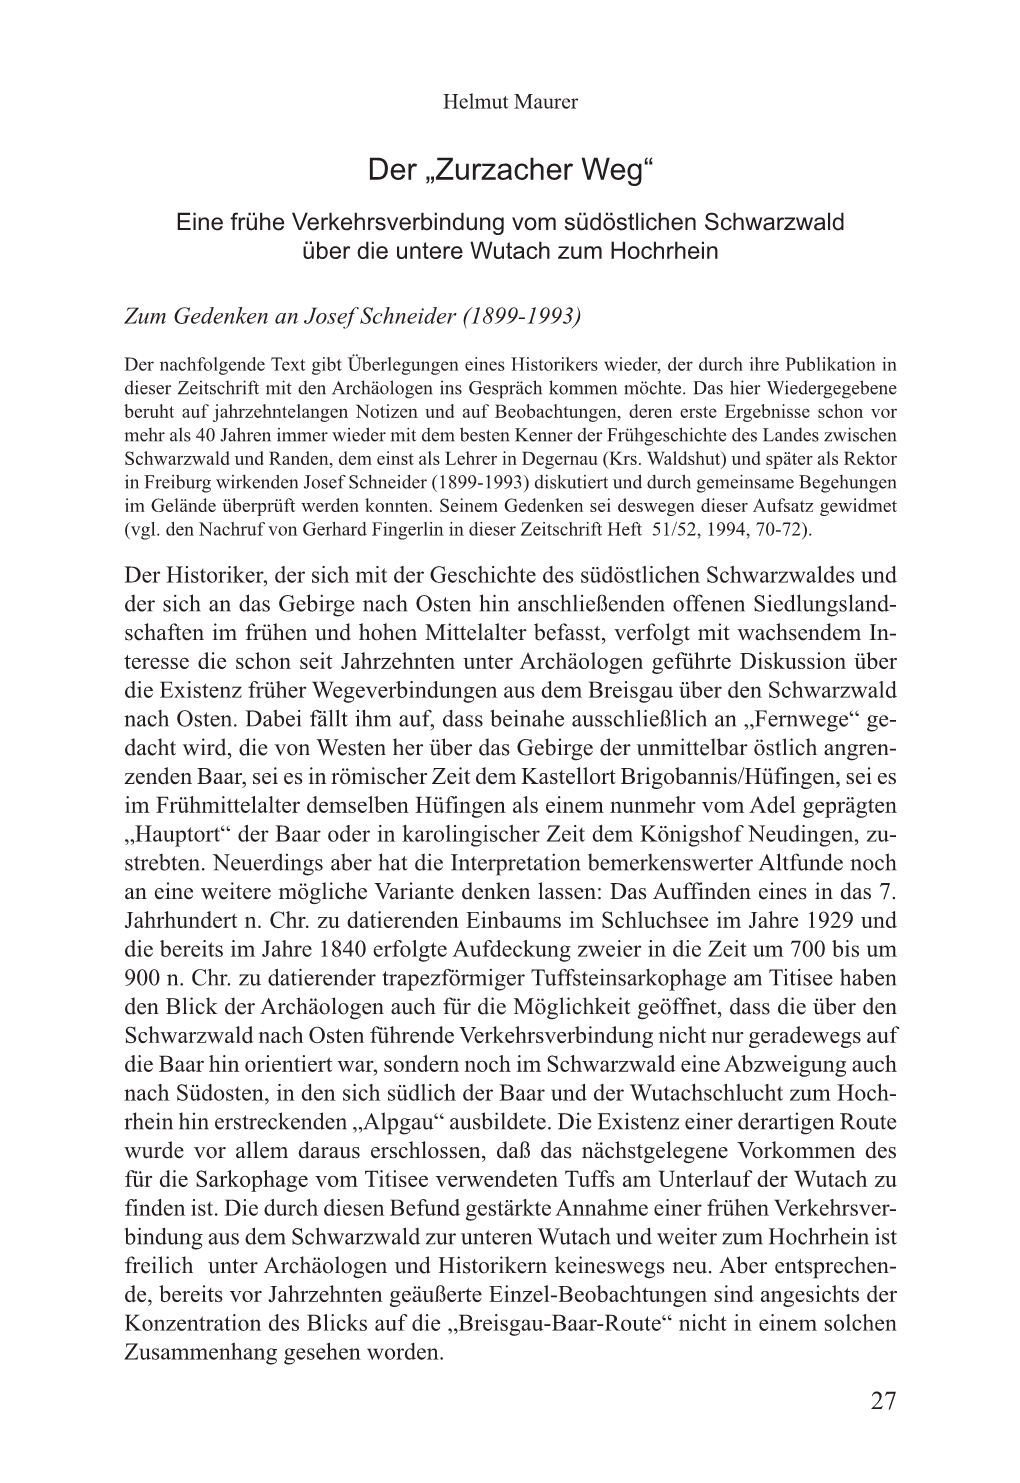 Archäologische Nachrichten Aus Baden, Bd. 82 (2011)